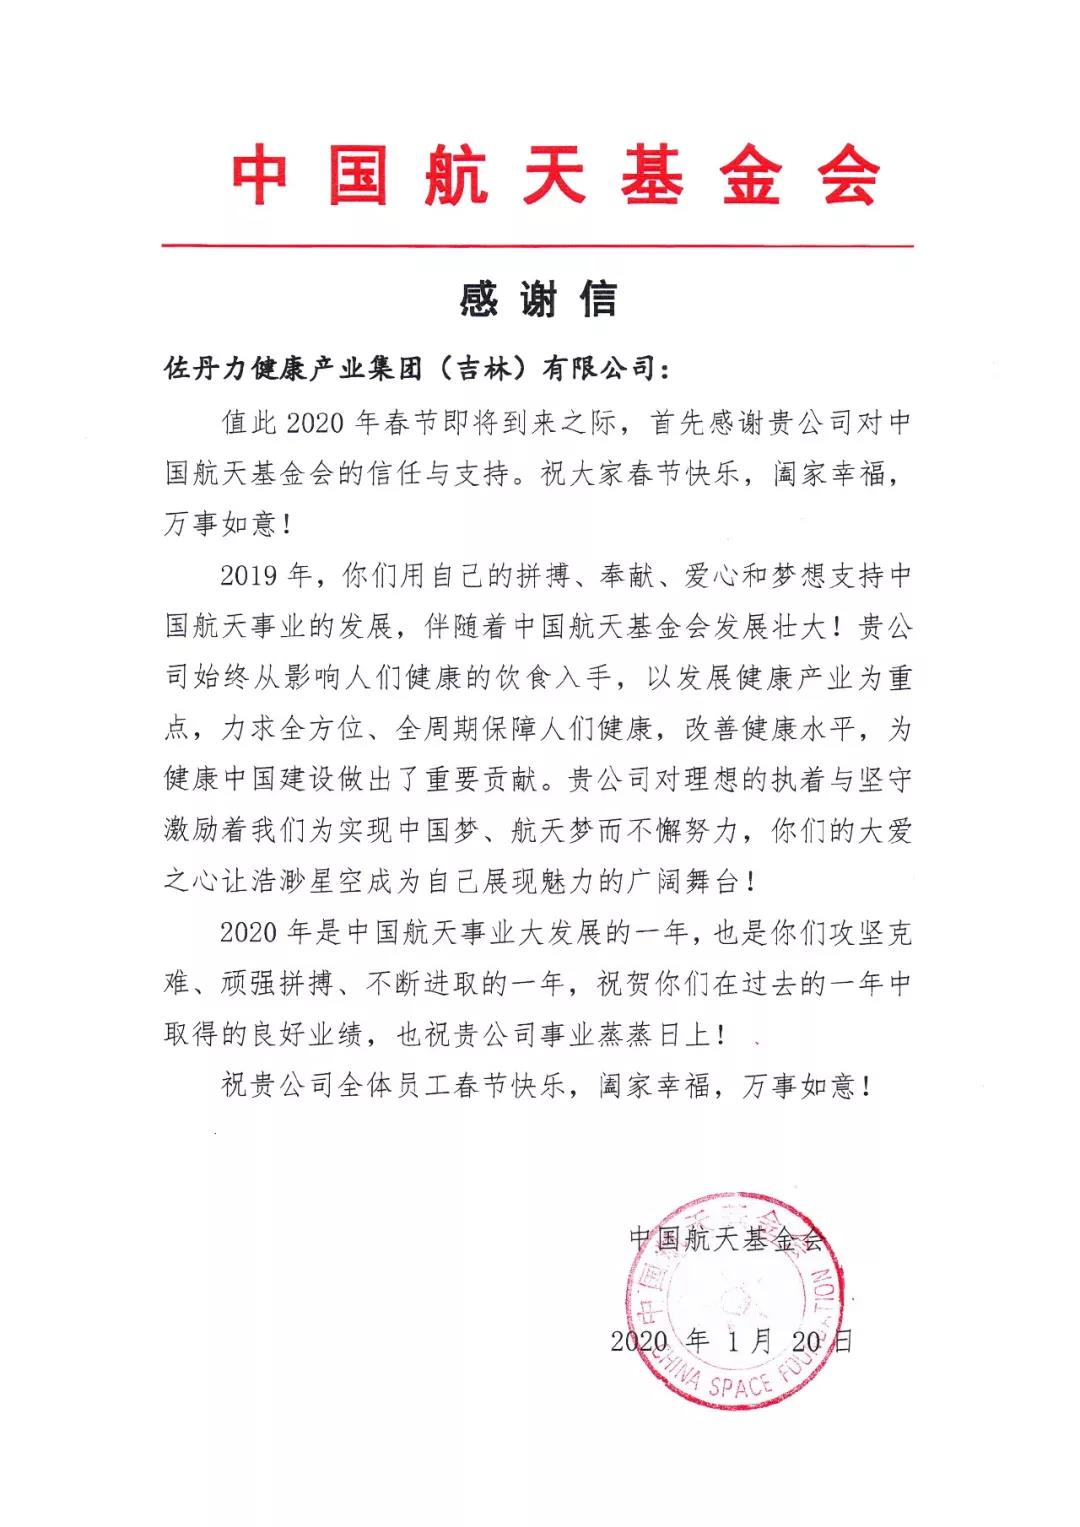 中国航天基金会给佐丹力集团发来感谢信